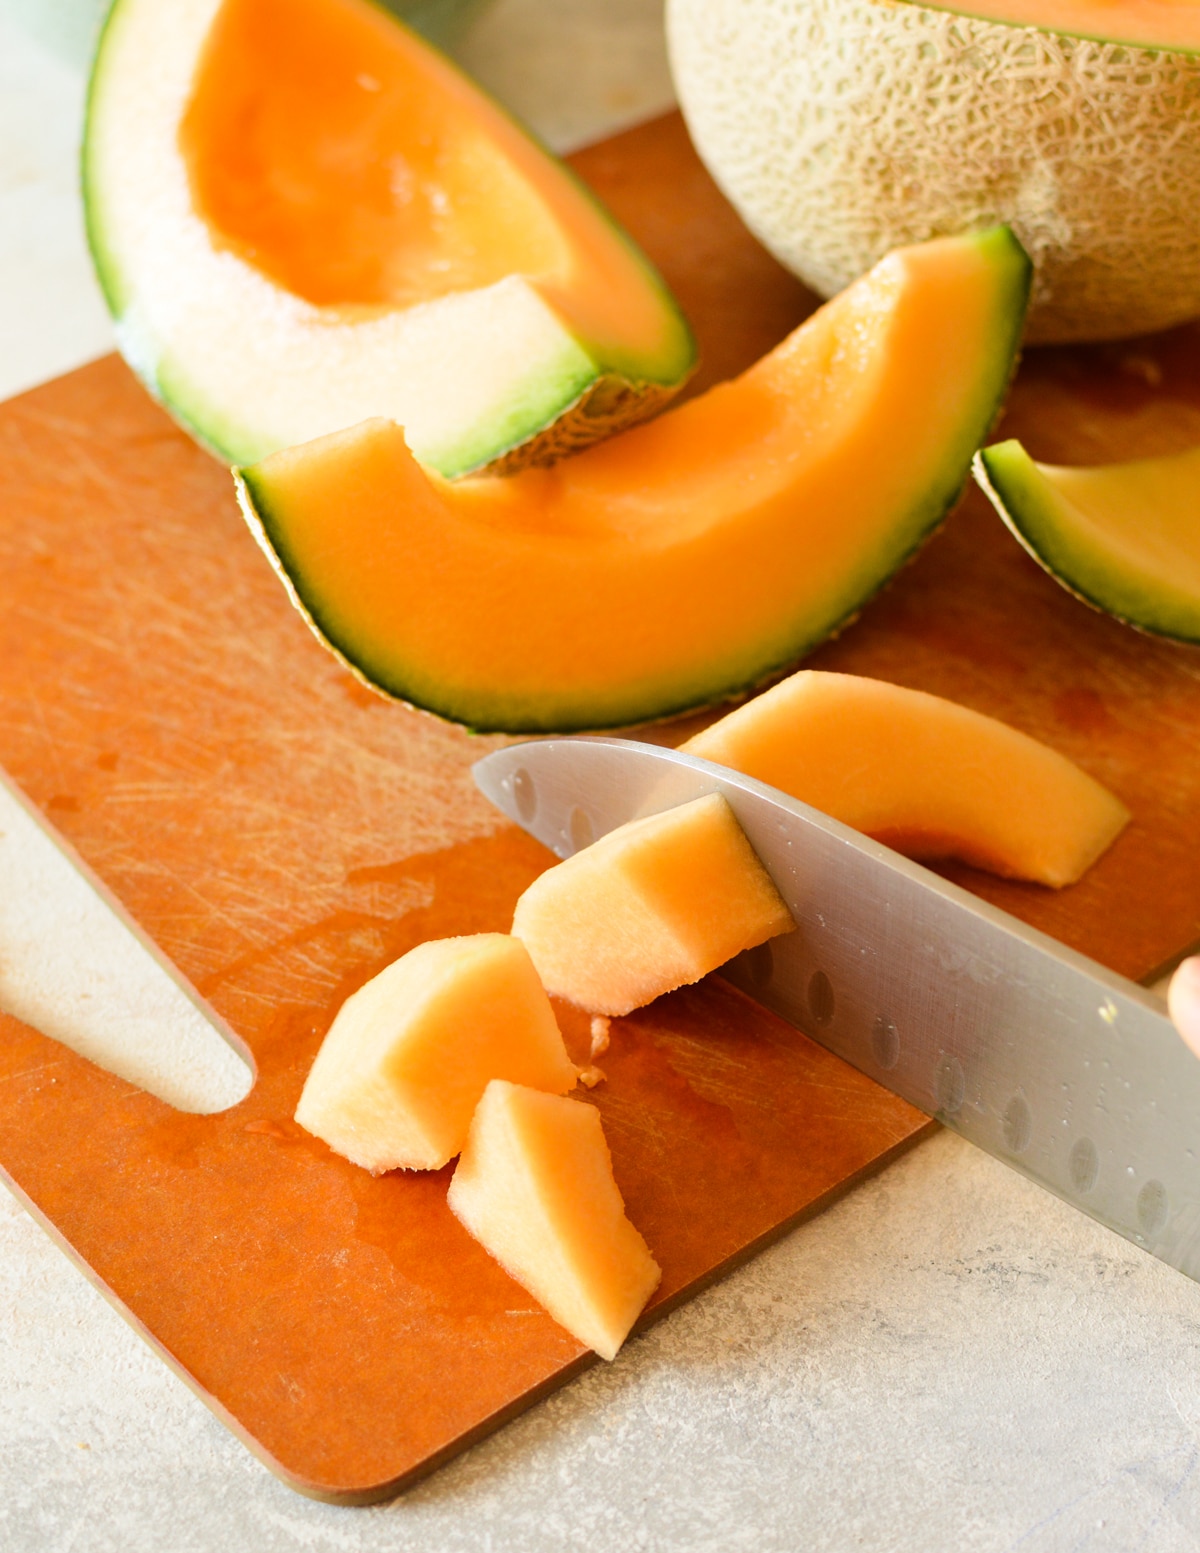 knife cutting cantaloupe into chunks.